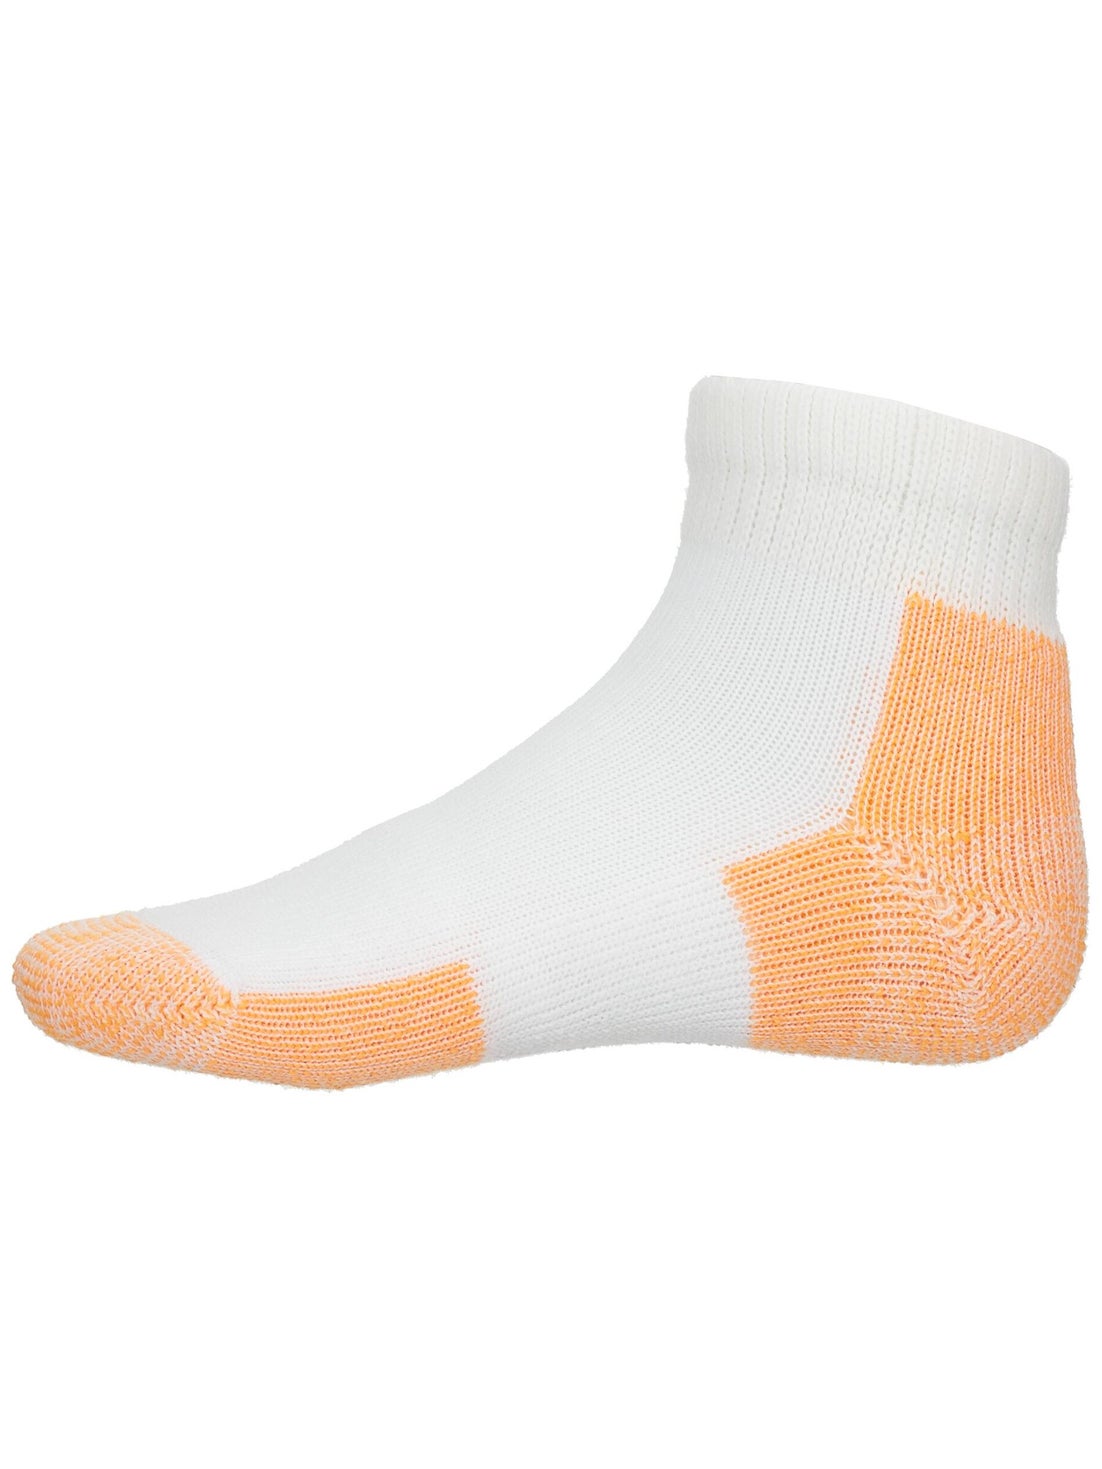 Thorlo Max Cushion Ankle Sock Peach | Tennis Warehouse